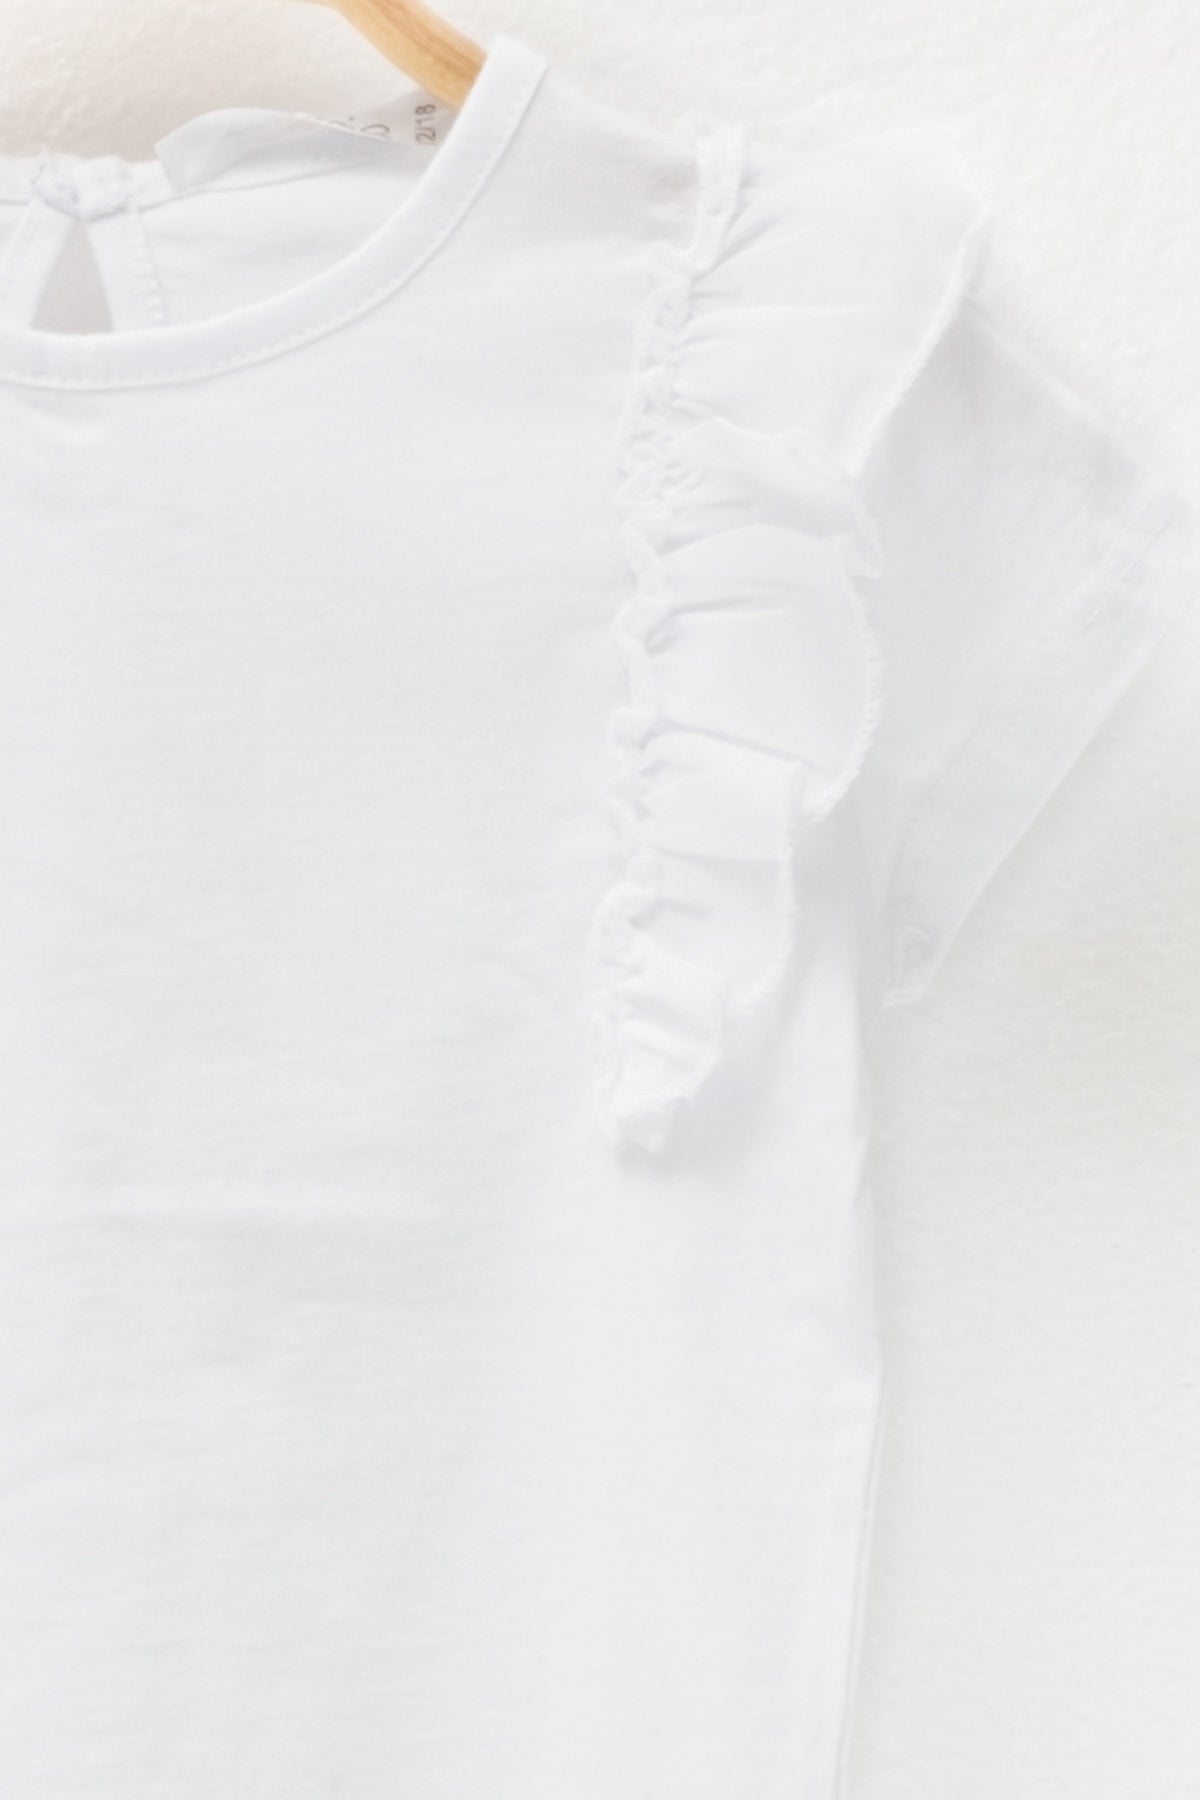 Kız Bebek Fırfırlı Beyaz T-Shirt-1